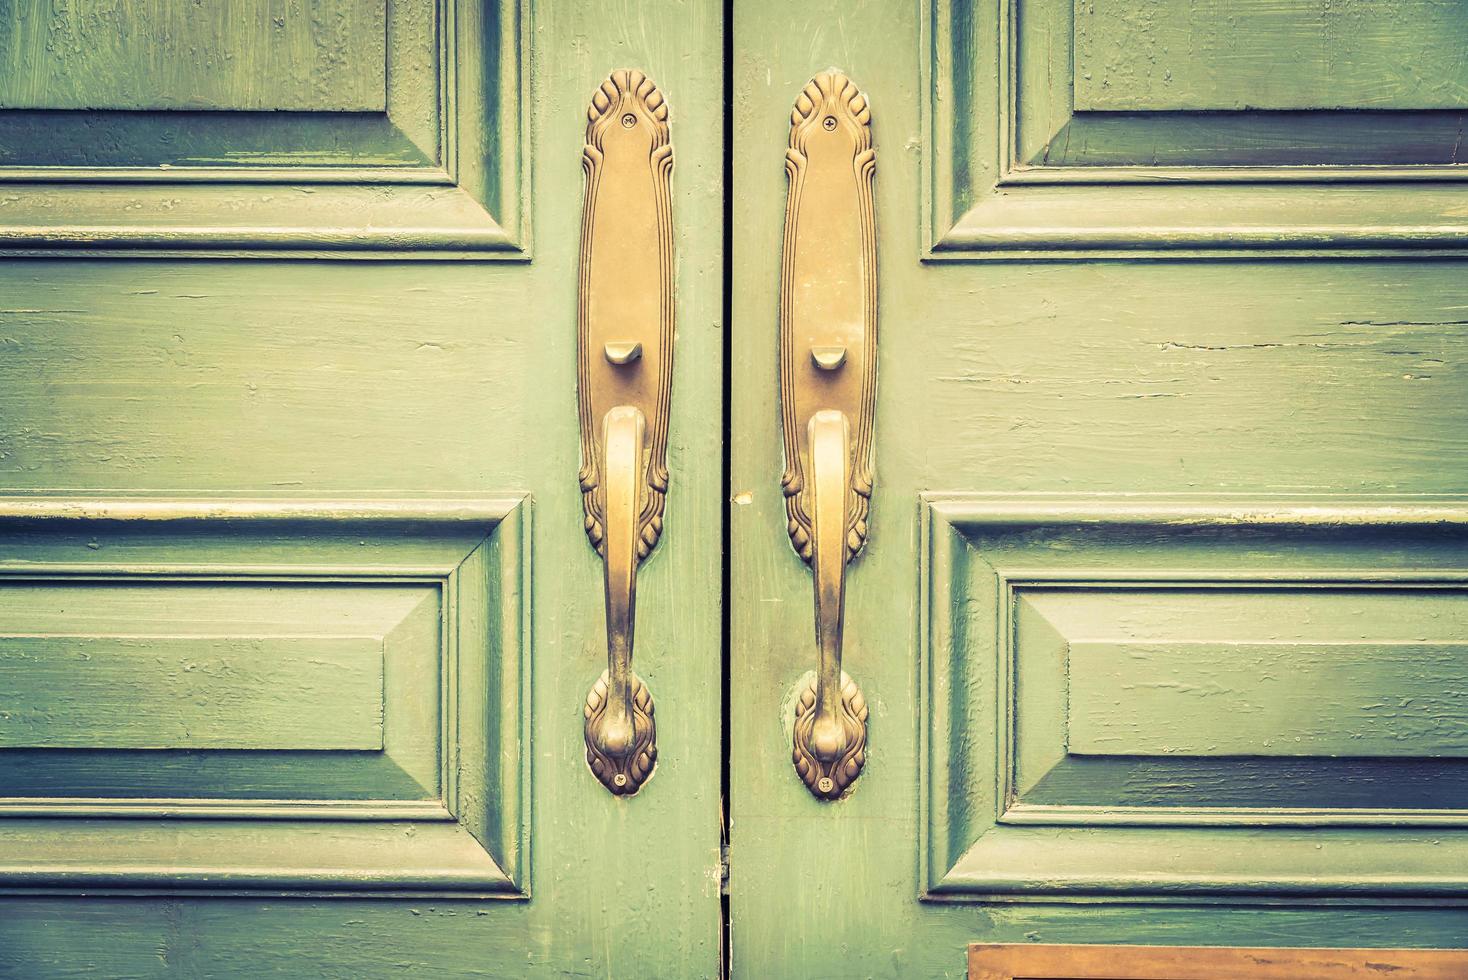 dörrhandtag vintage stil foto